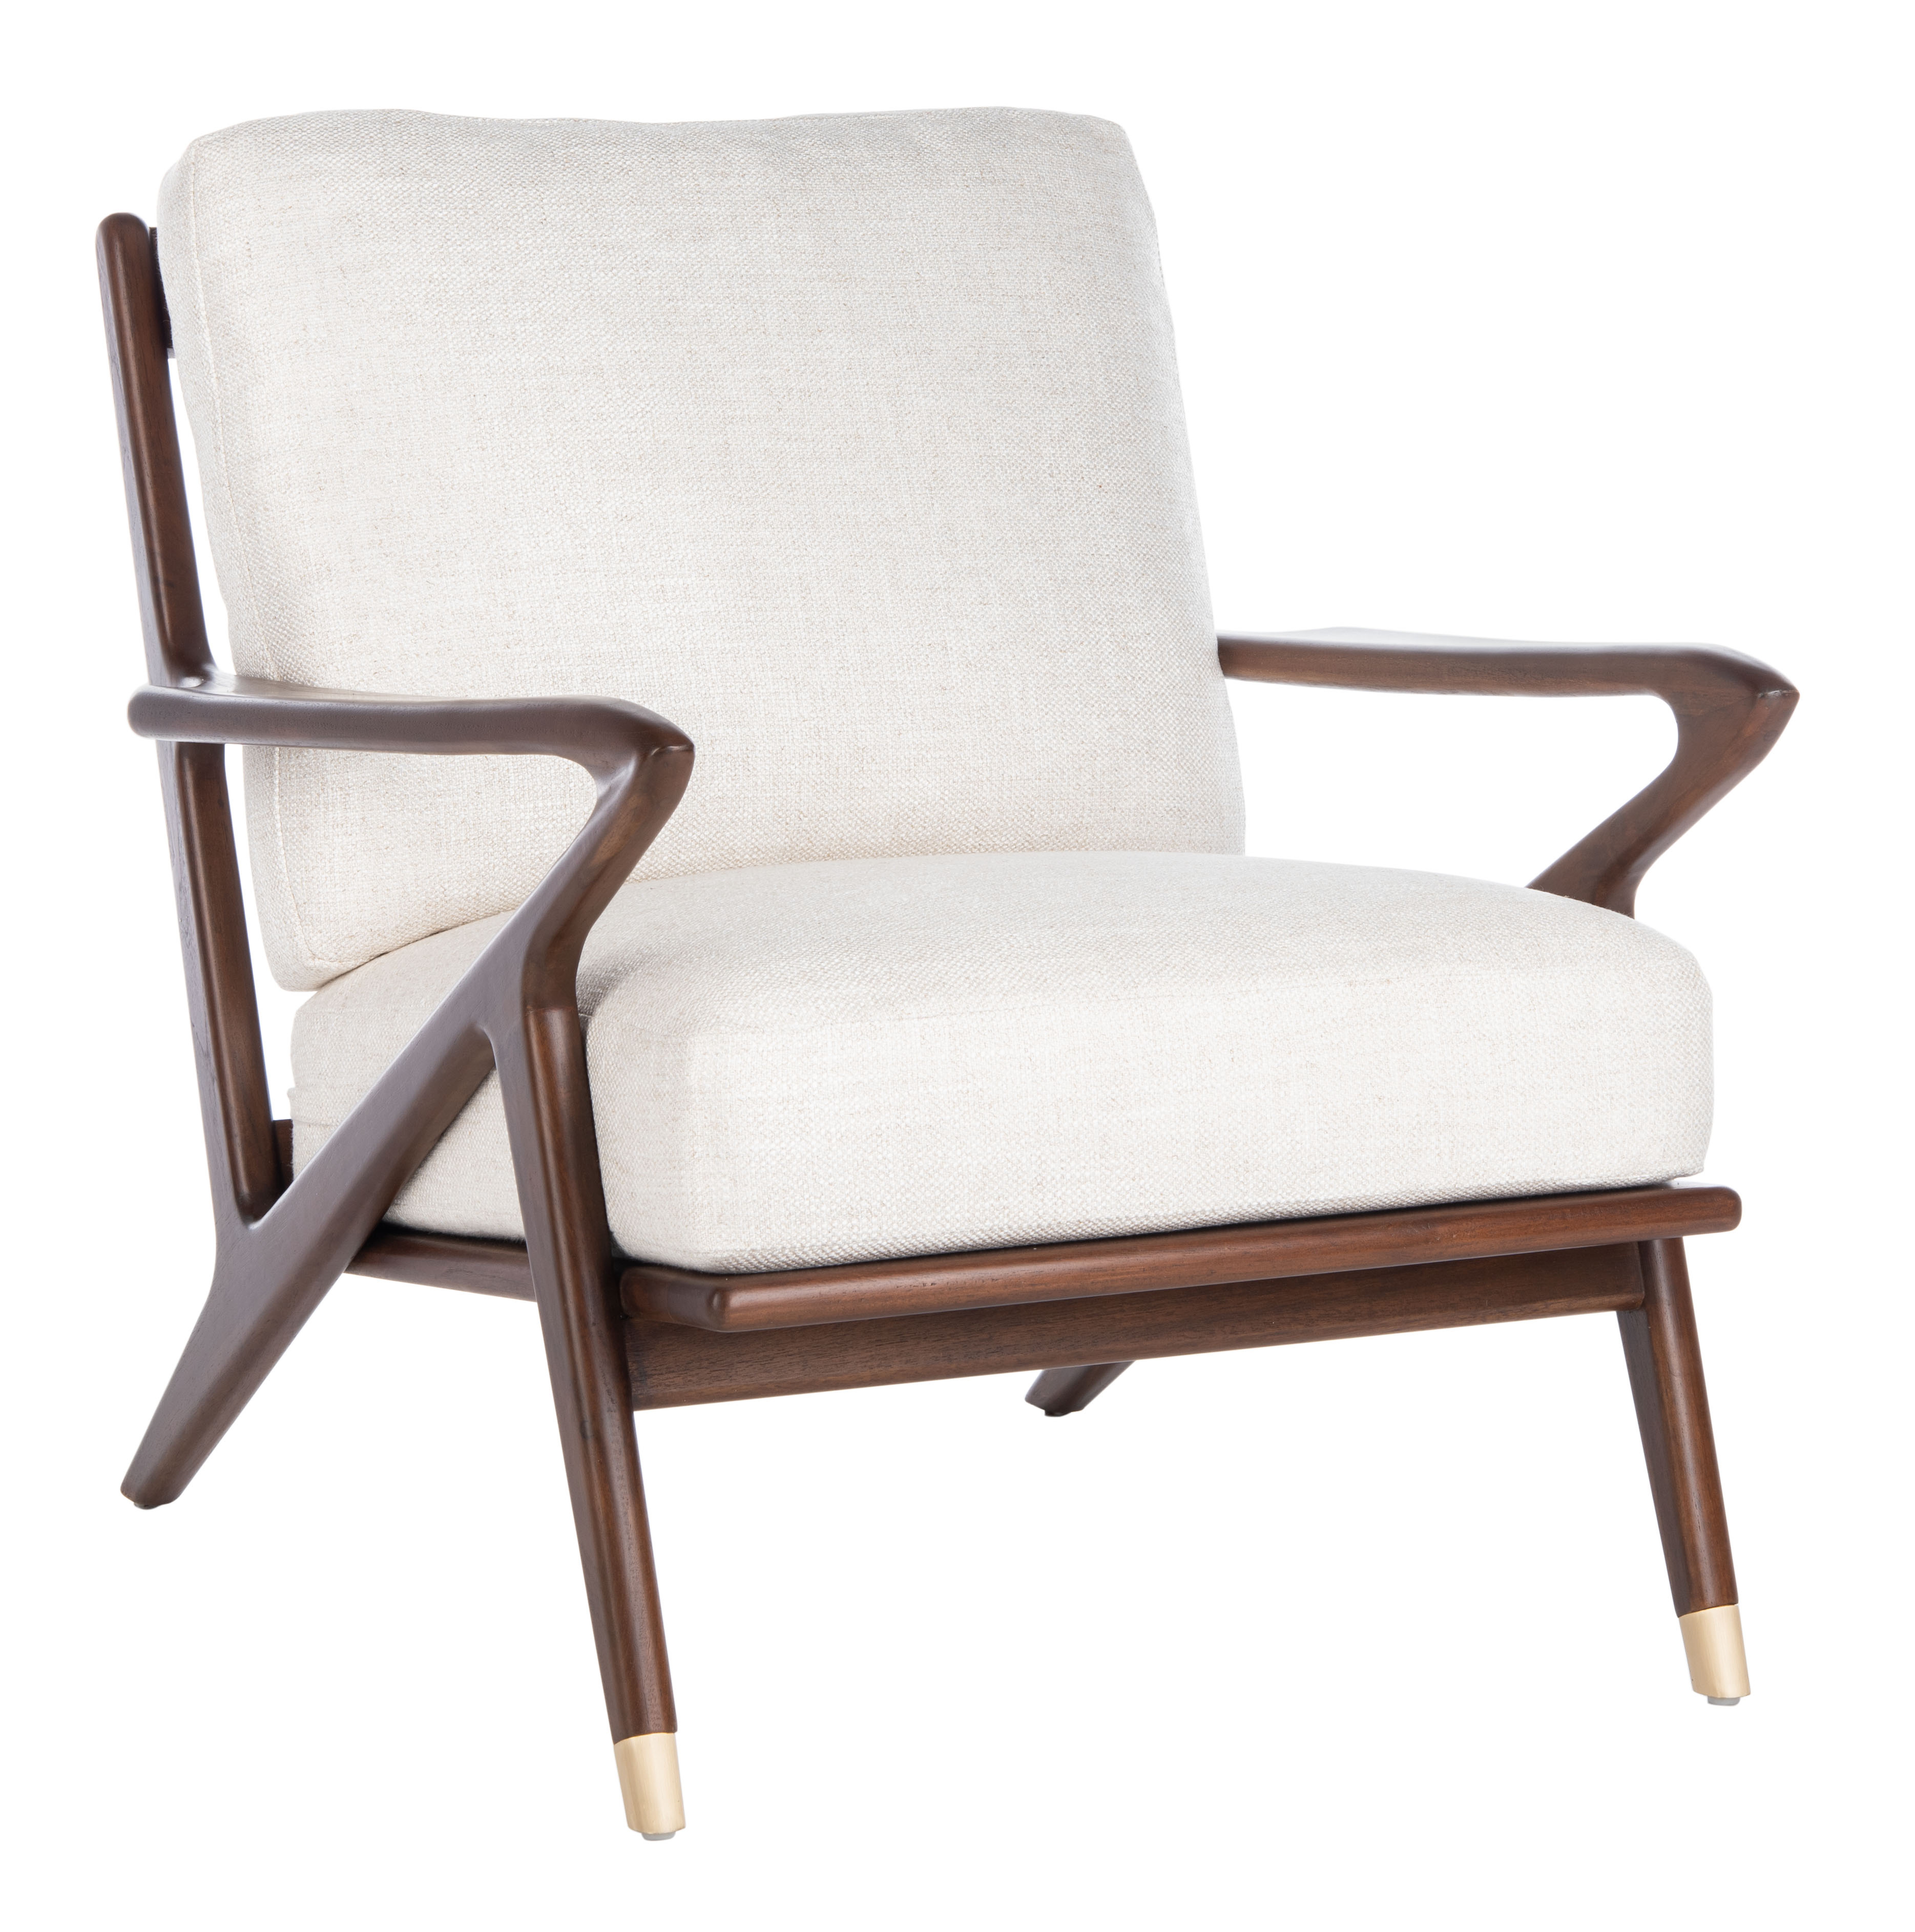 Killian Mid Century Accent Chair - Cream - Arlo Home - Arlo Home